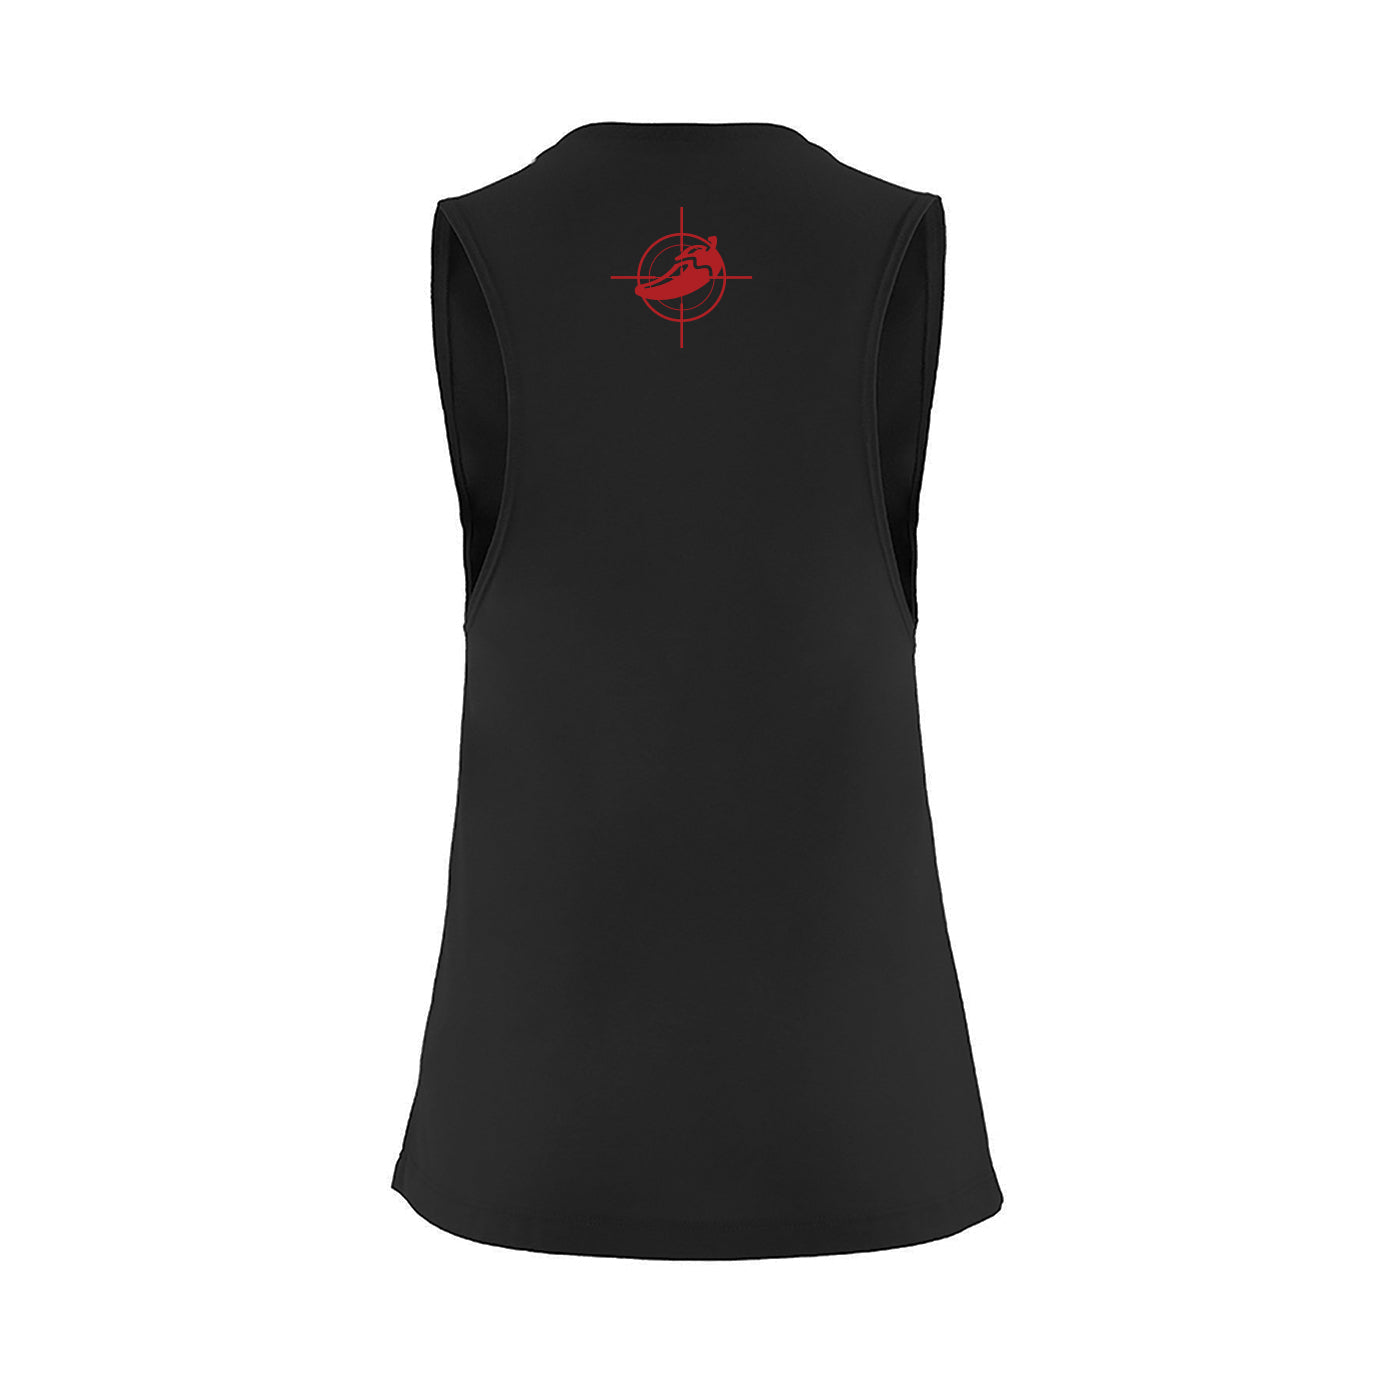 SMOKIN THANGS Ladies Muscle Shirt - Black